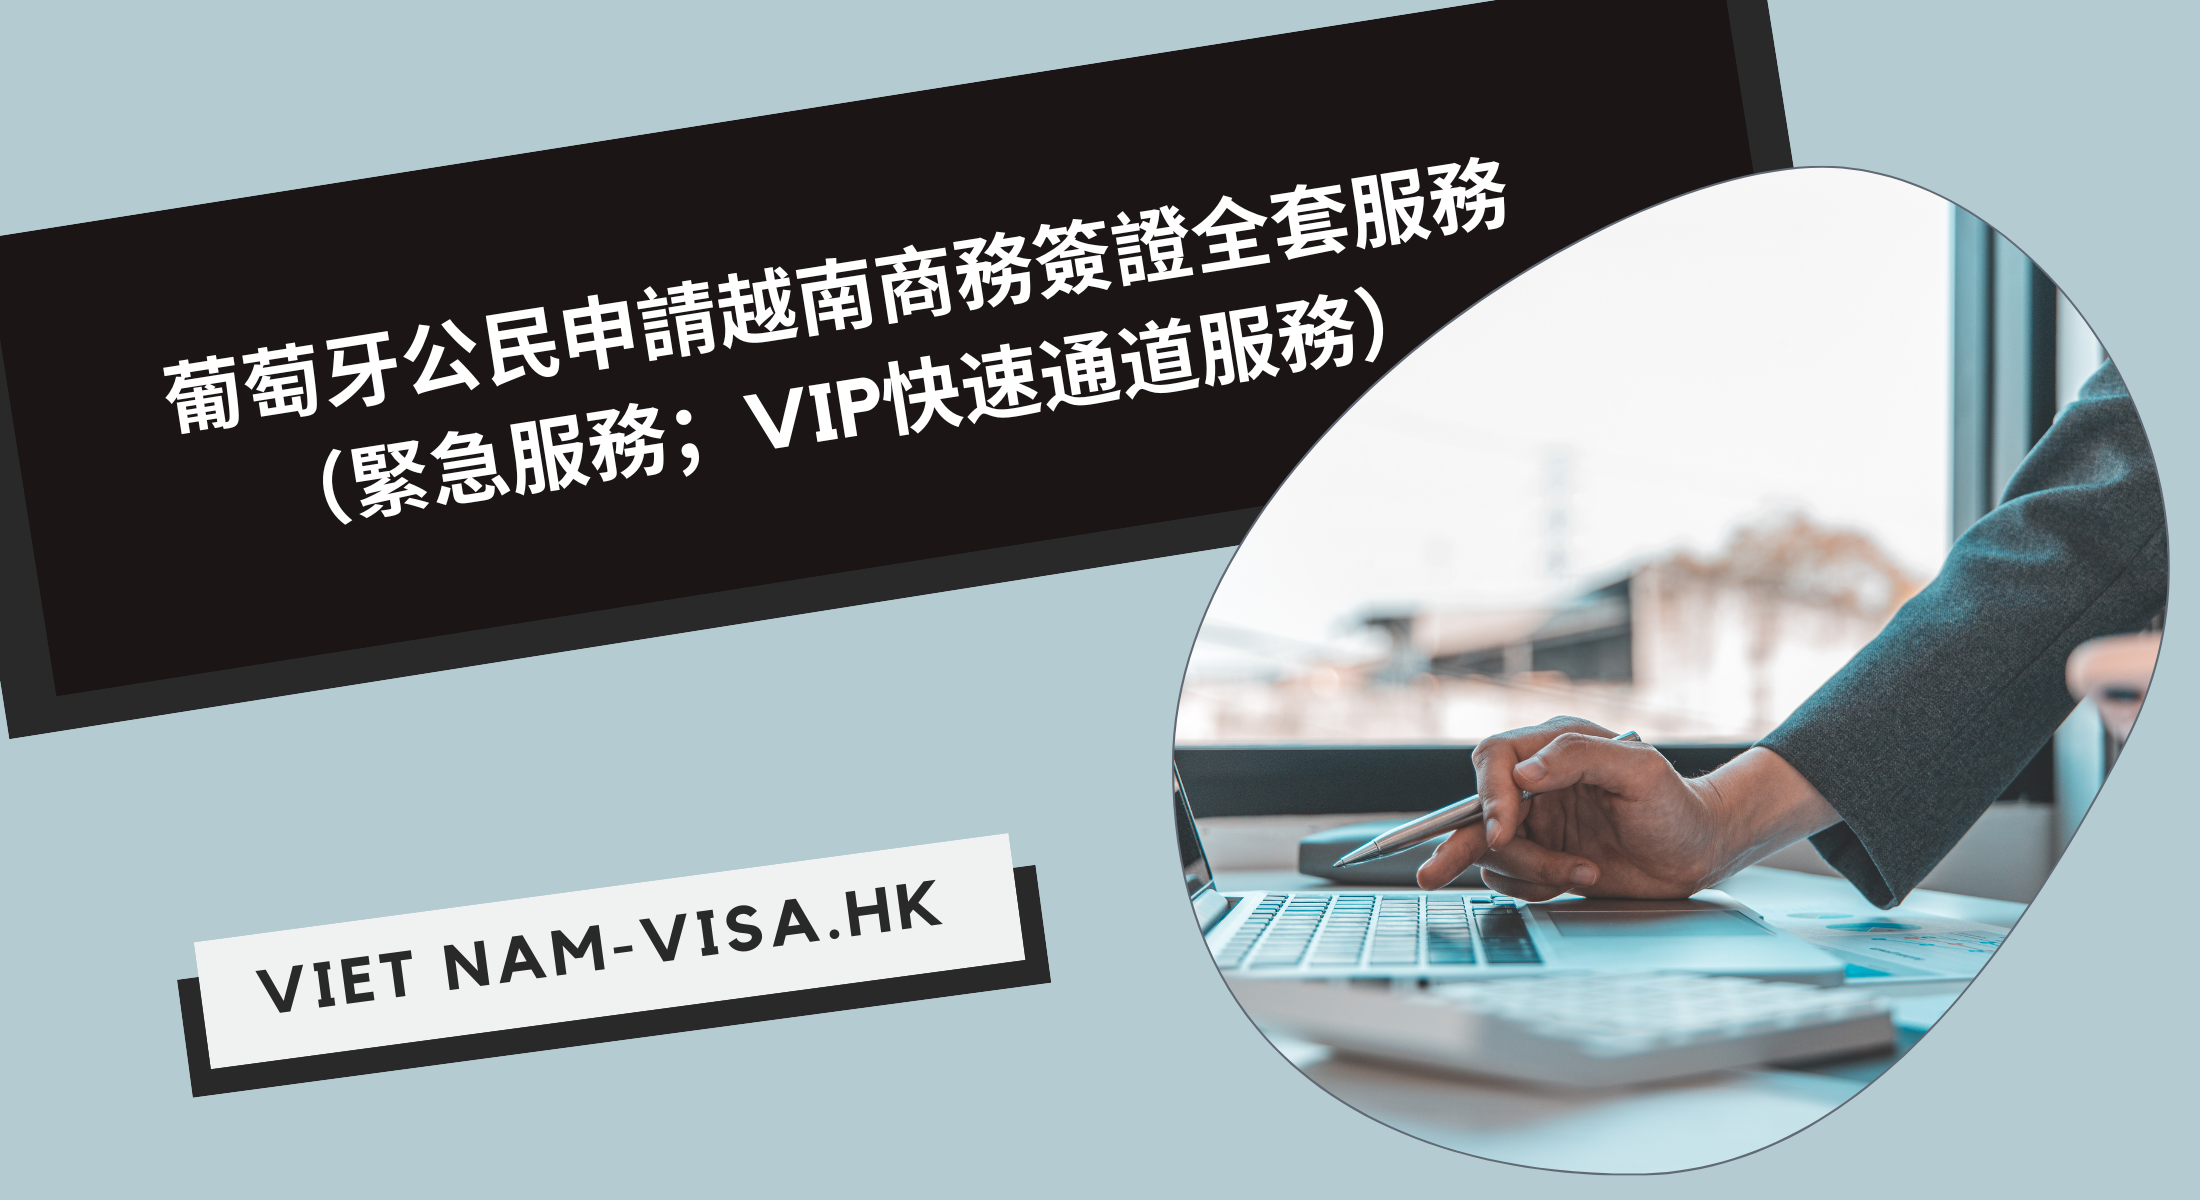 葡萄牙公民申請越南商務簽證全套服務